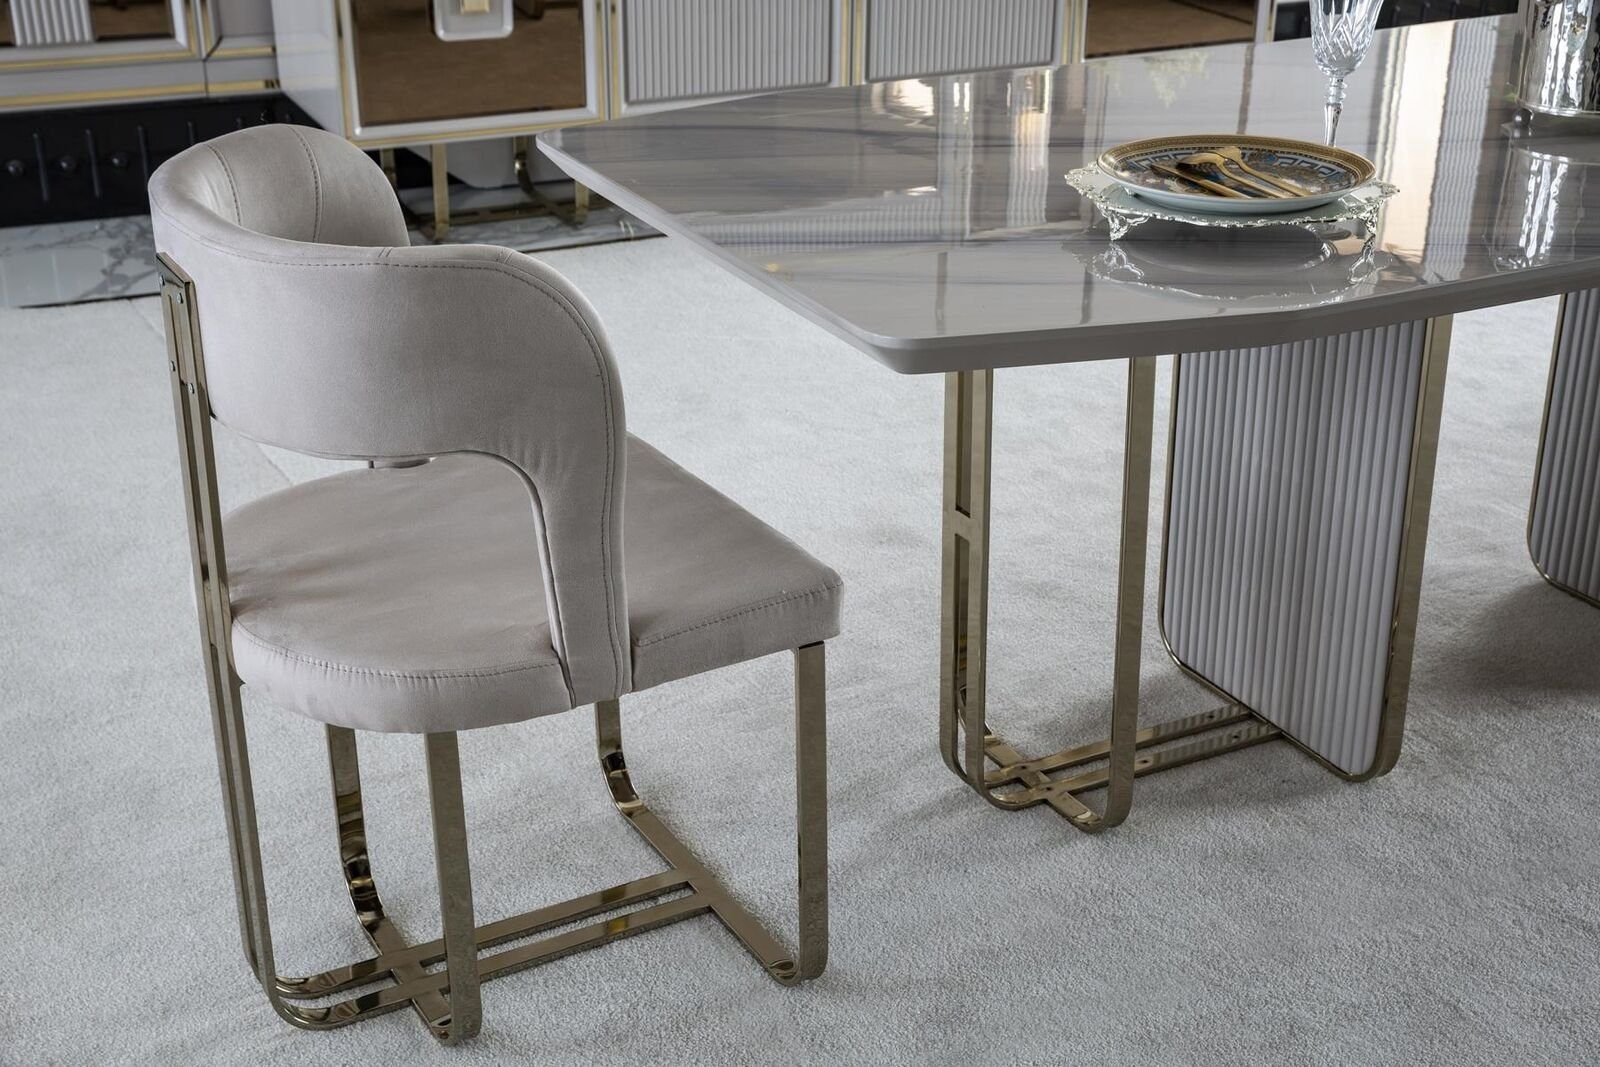 Modern Esszimmer Elegantes Tisch Metall JVmoebel Schön Weiß Luxus Esstisch Stil Esstisch